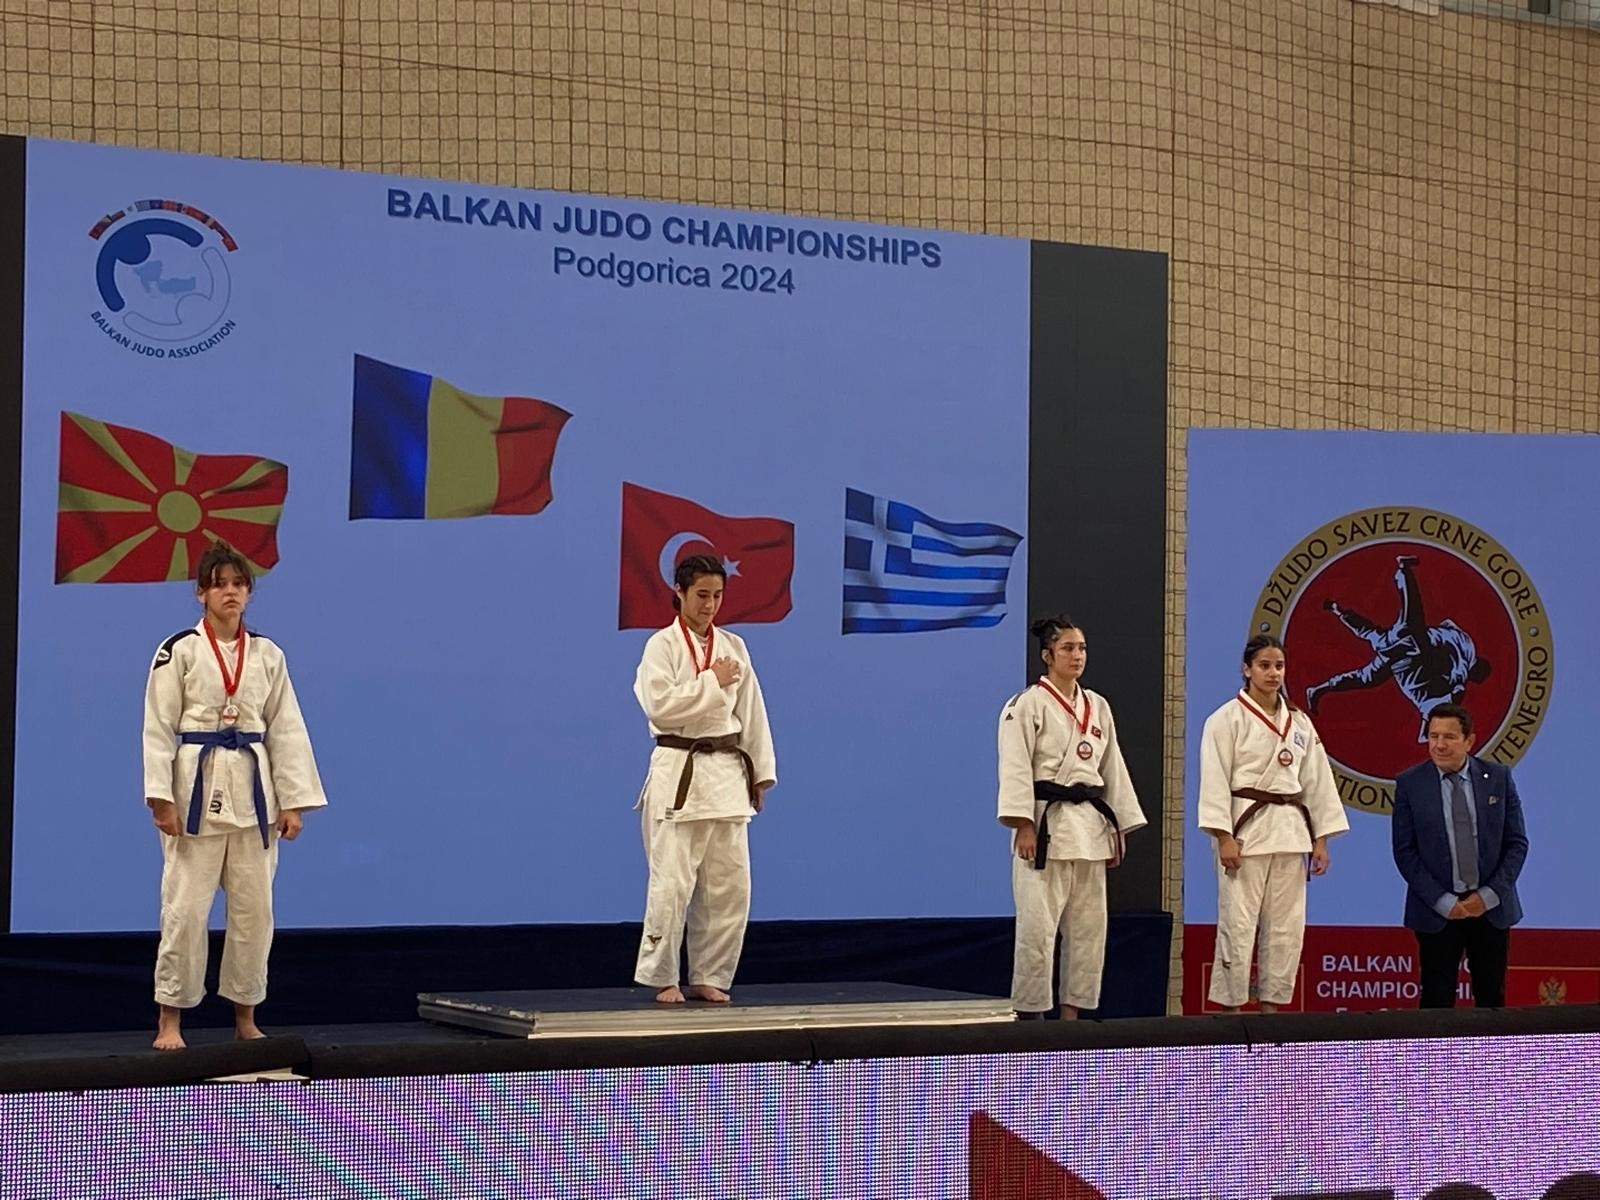 Yunusemre Belediyespor Judocusu Fulya Ergen, Karadağ'da Yapılan Ümitler Balkan Şampiyonası'nda Bronz Madalya Kazanarak, Manisa'nın Gururu Oldu (3)